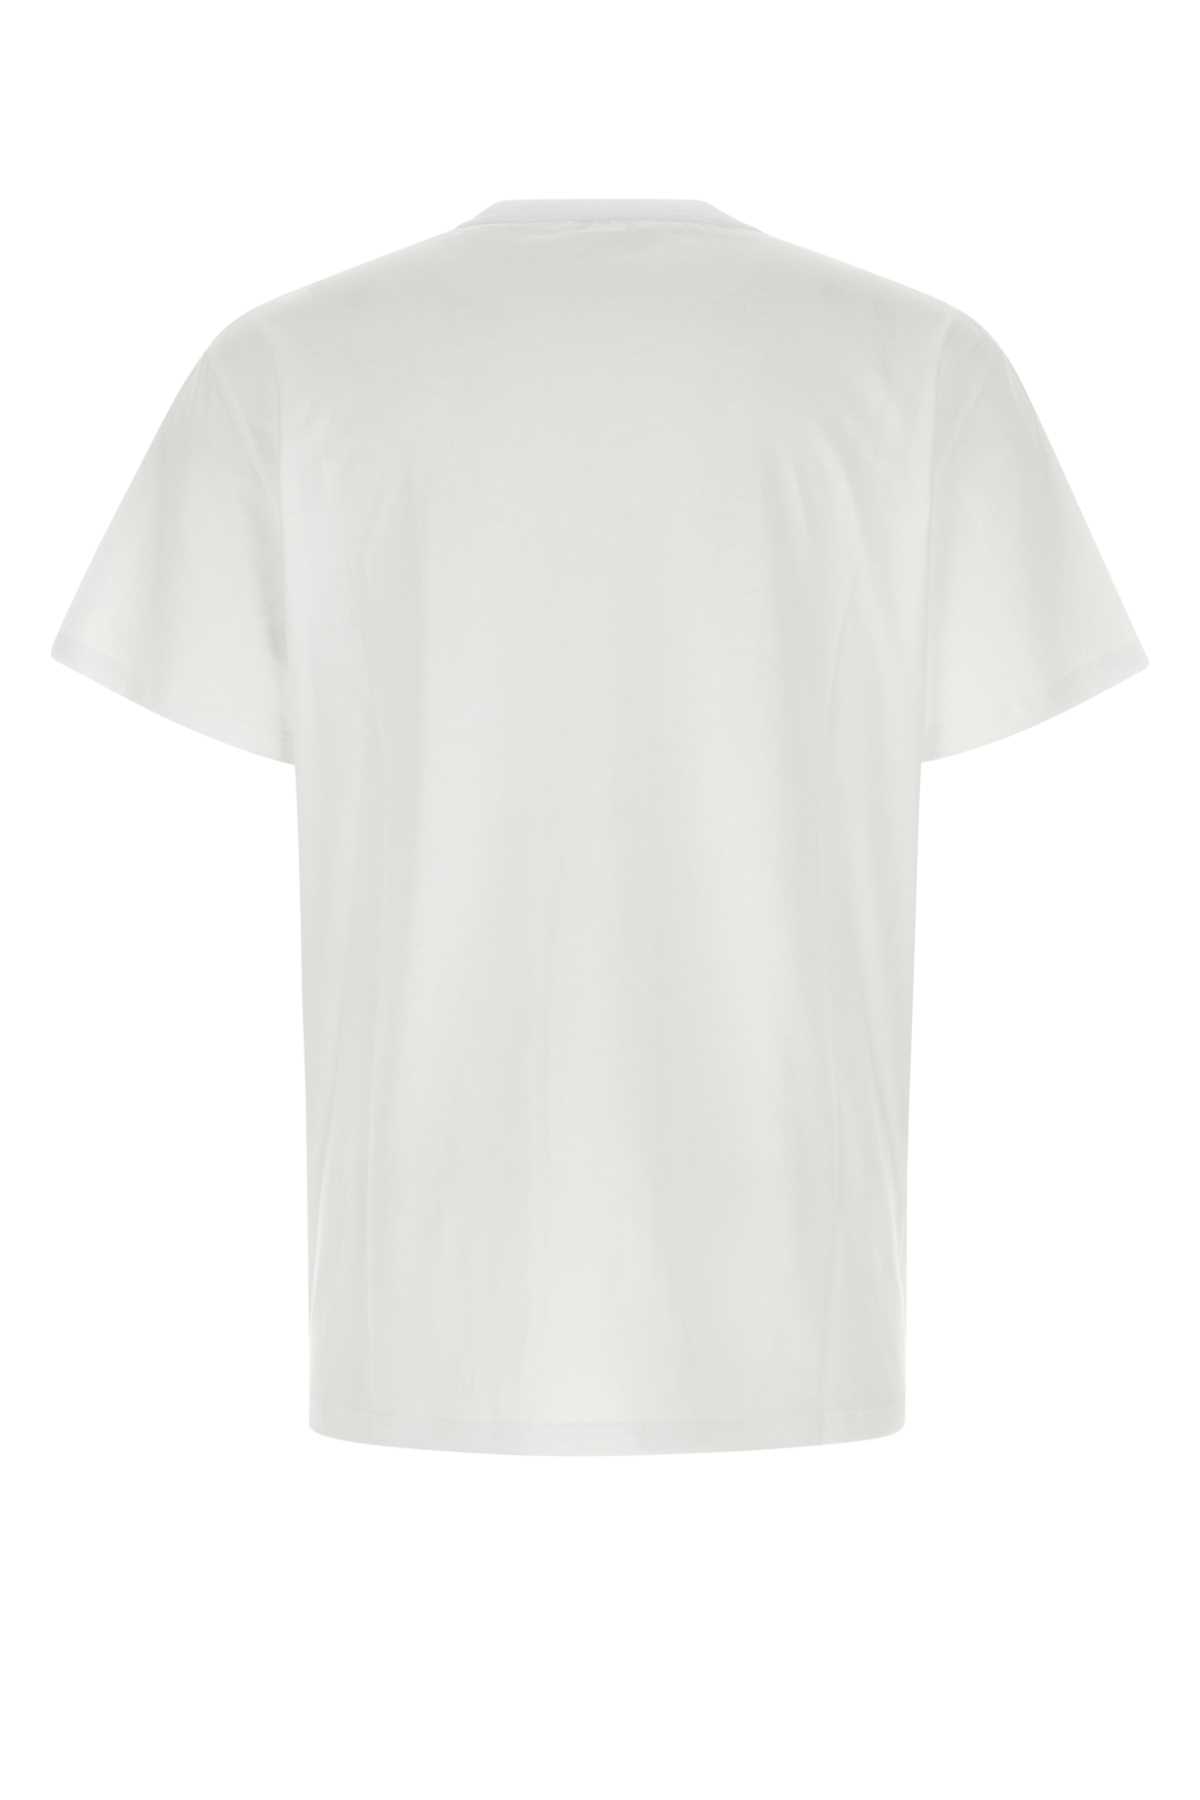 Alexander Mcqueen White Cotton Oversize T-shirt In Whitemix